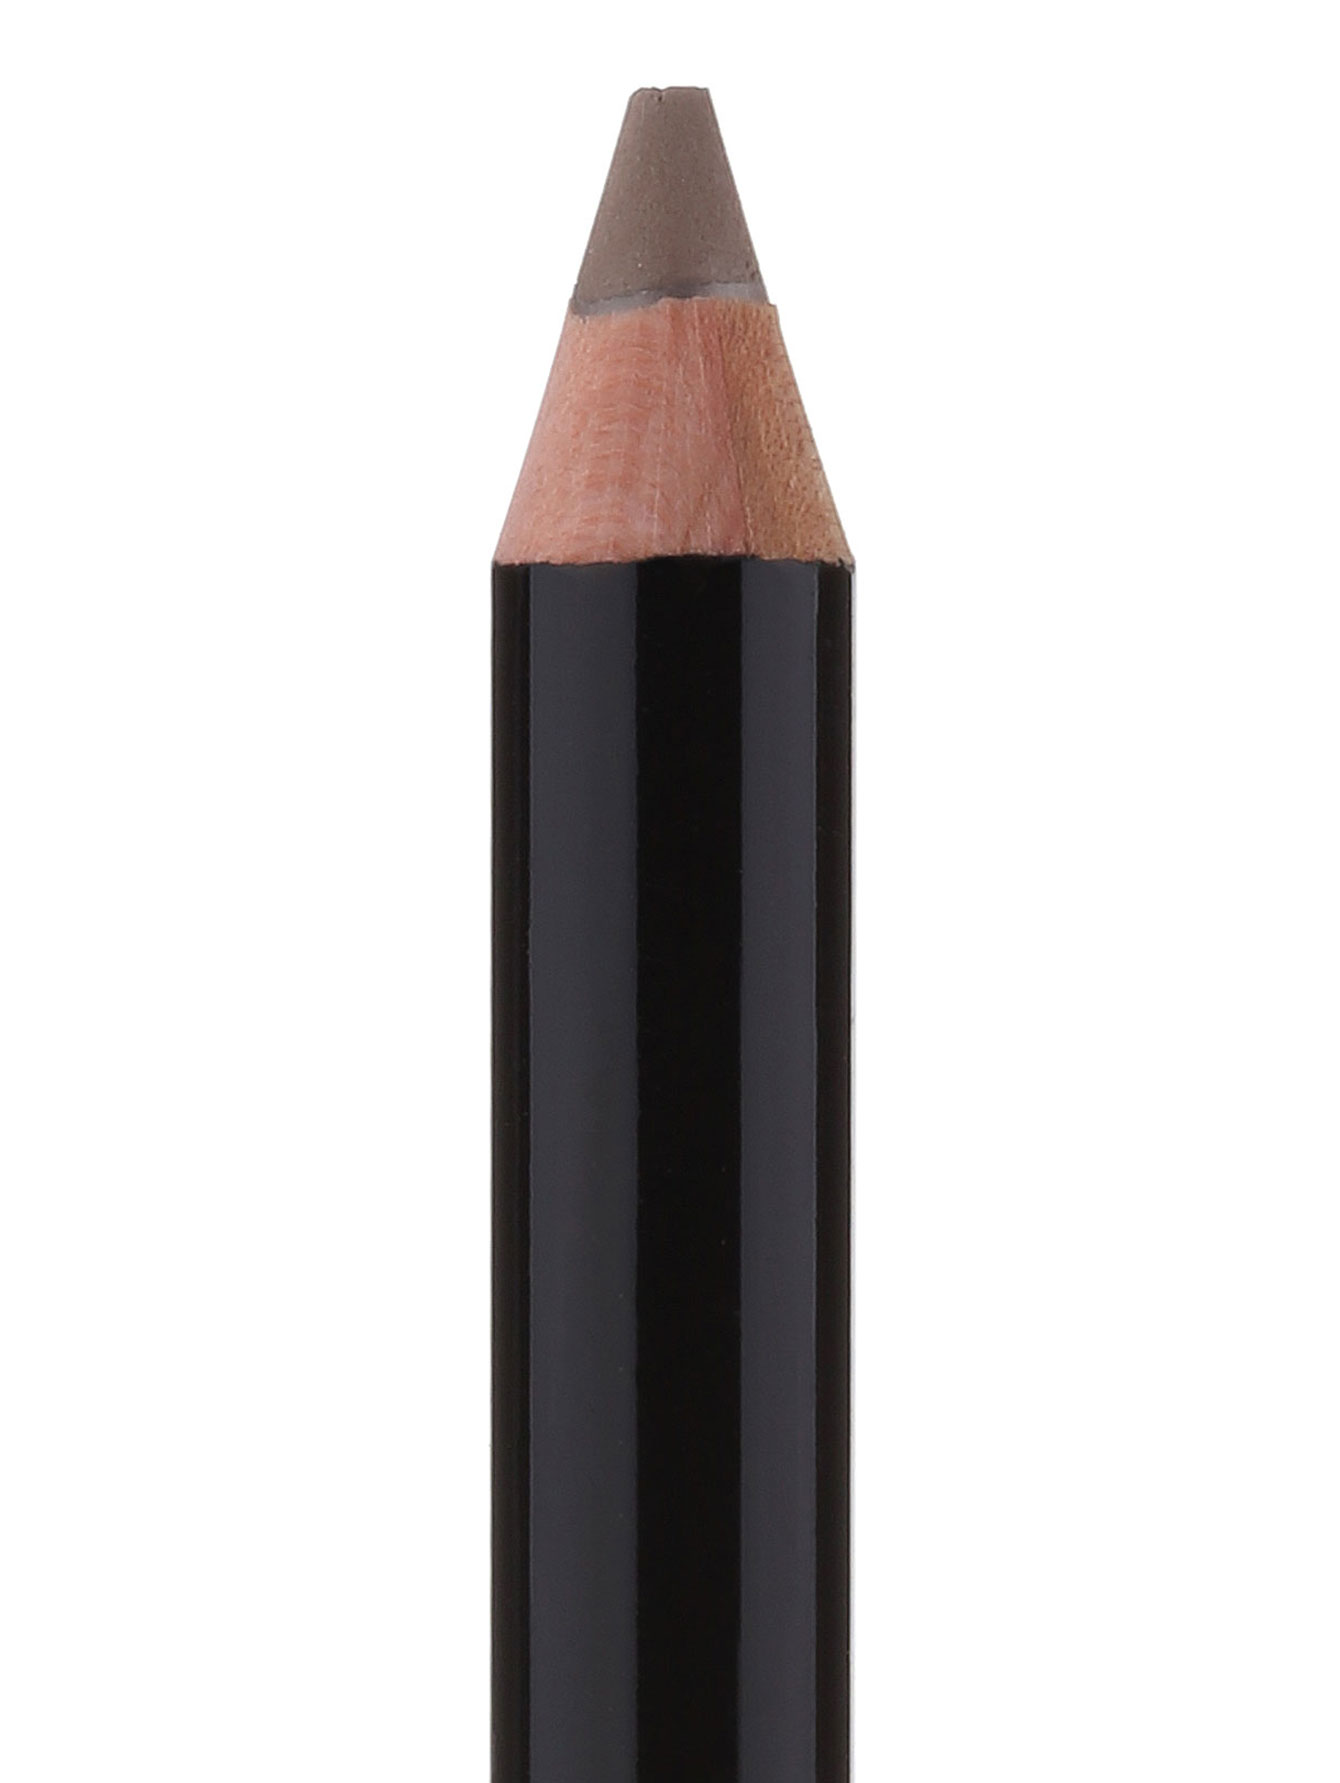  Карандаш для бровей - Grey, Brow Pencil - Общий вид